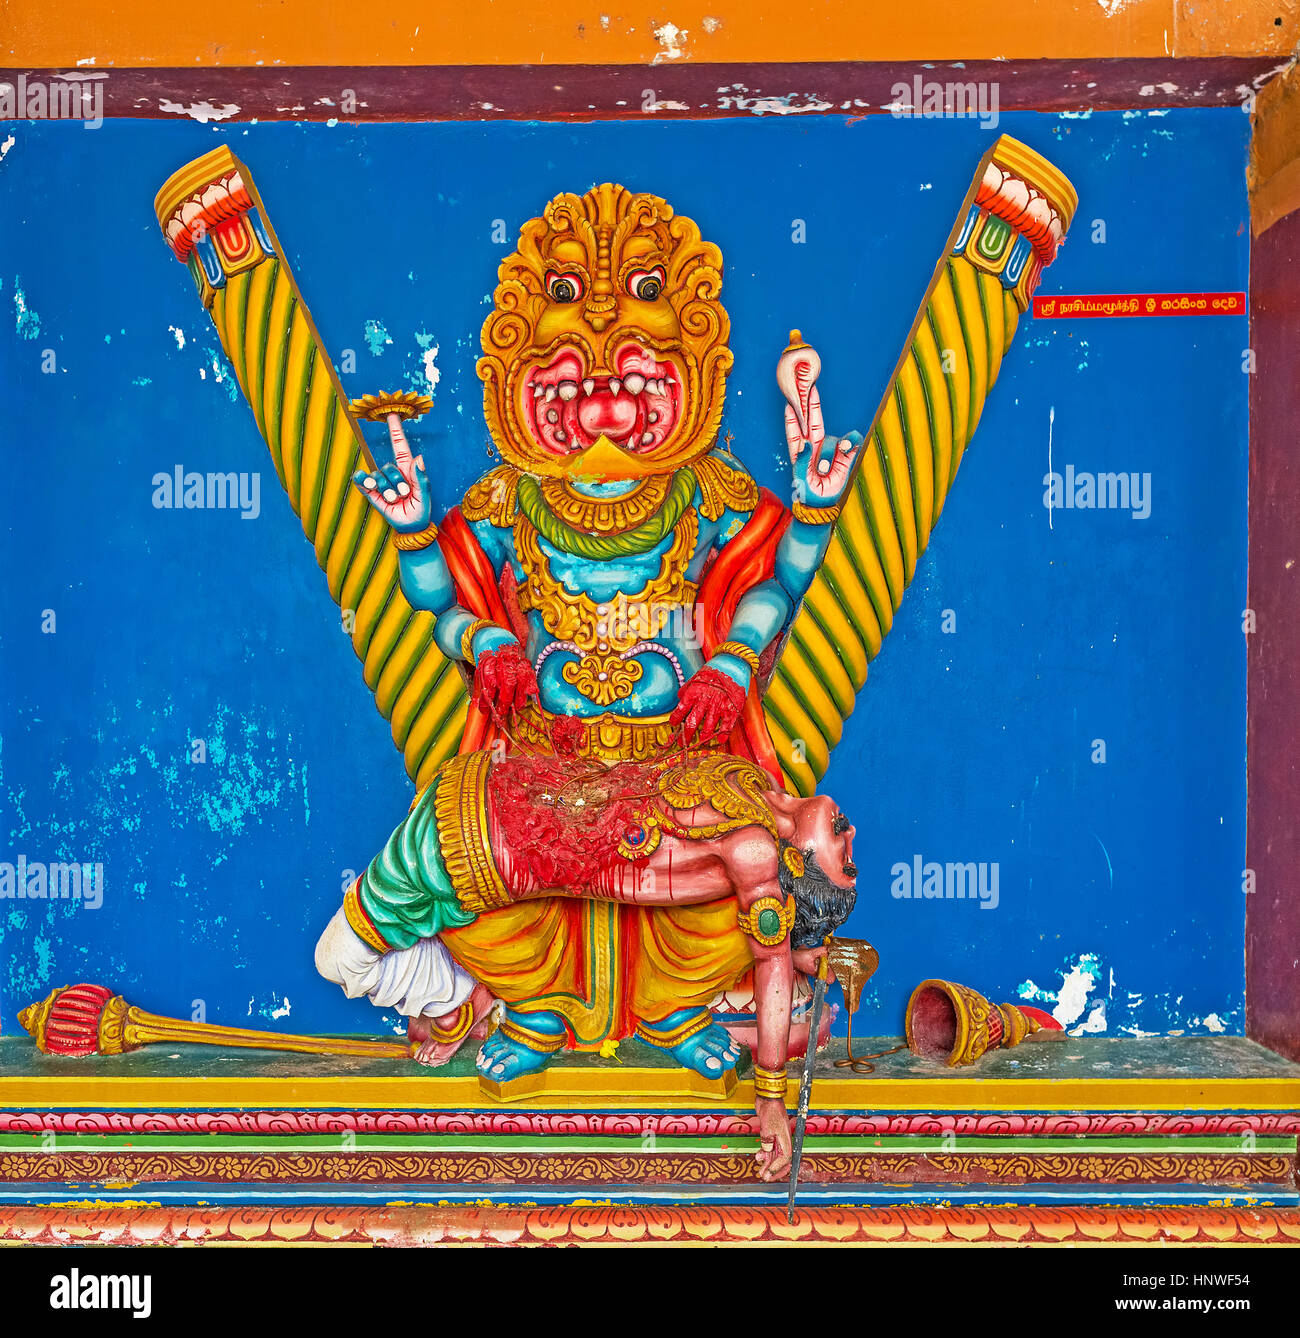 MUNNESWARAM, SRI LANKA - 25. November 2016: Zeigt die erleichtete Pannel in Munneswaram Kovil Gott Vishnu in Narasimha Avatar mit Löwenkopf und Mensch Stockfoto